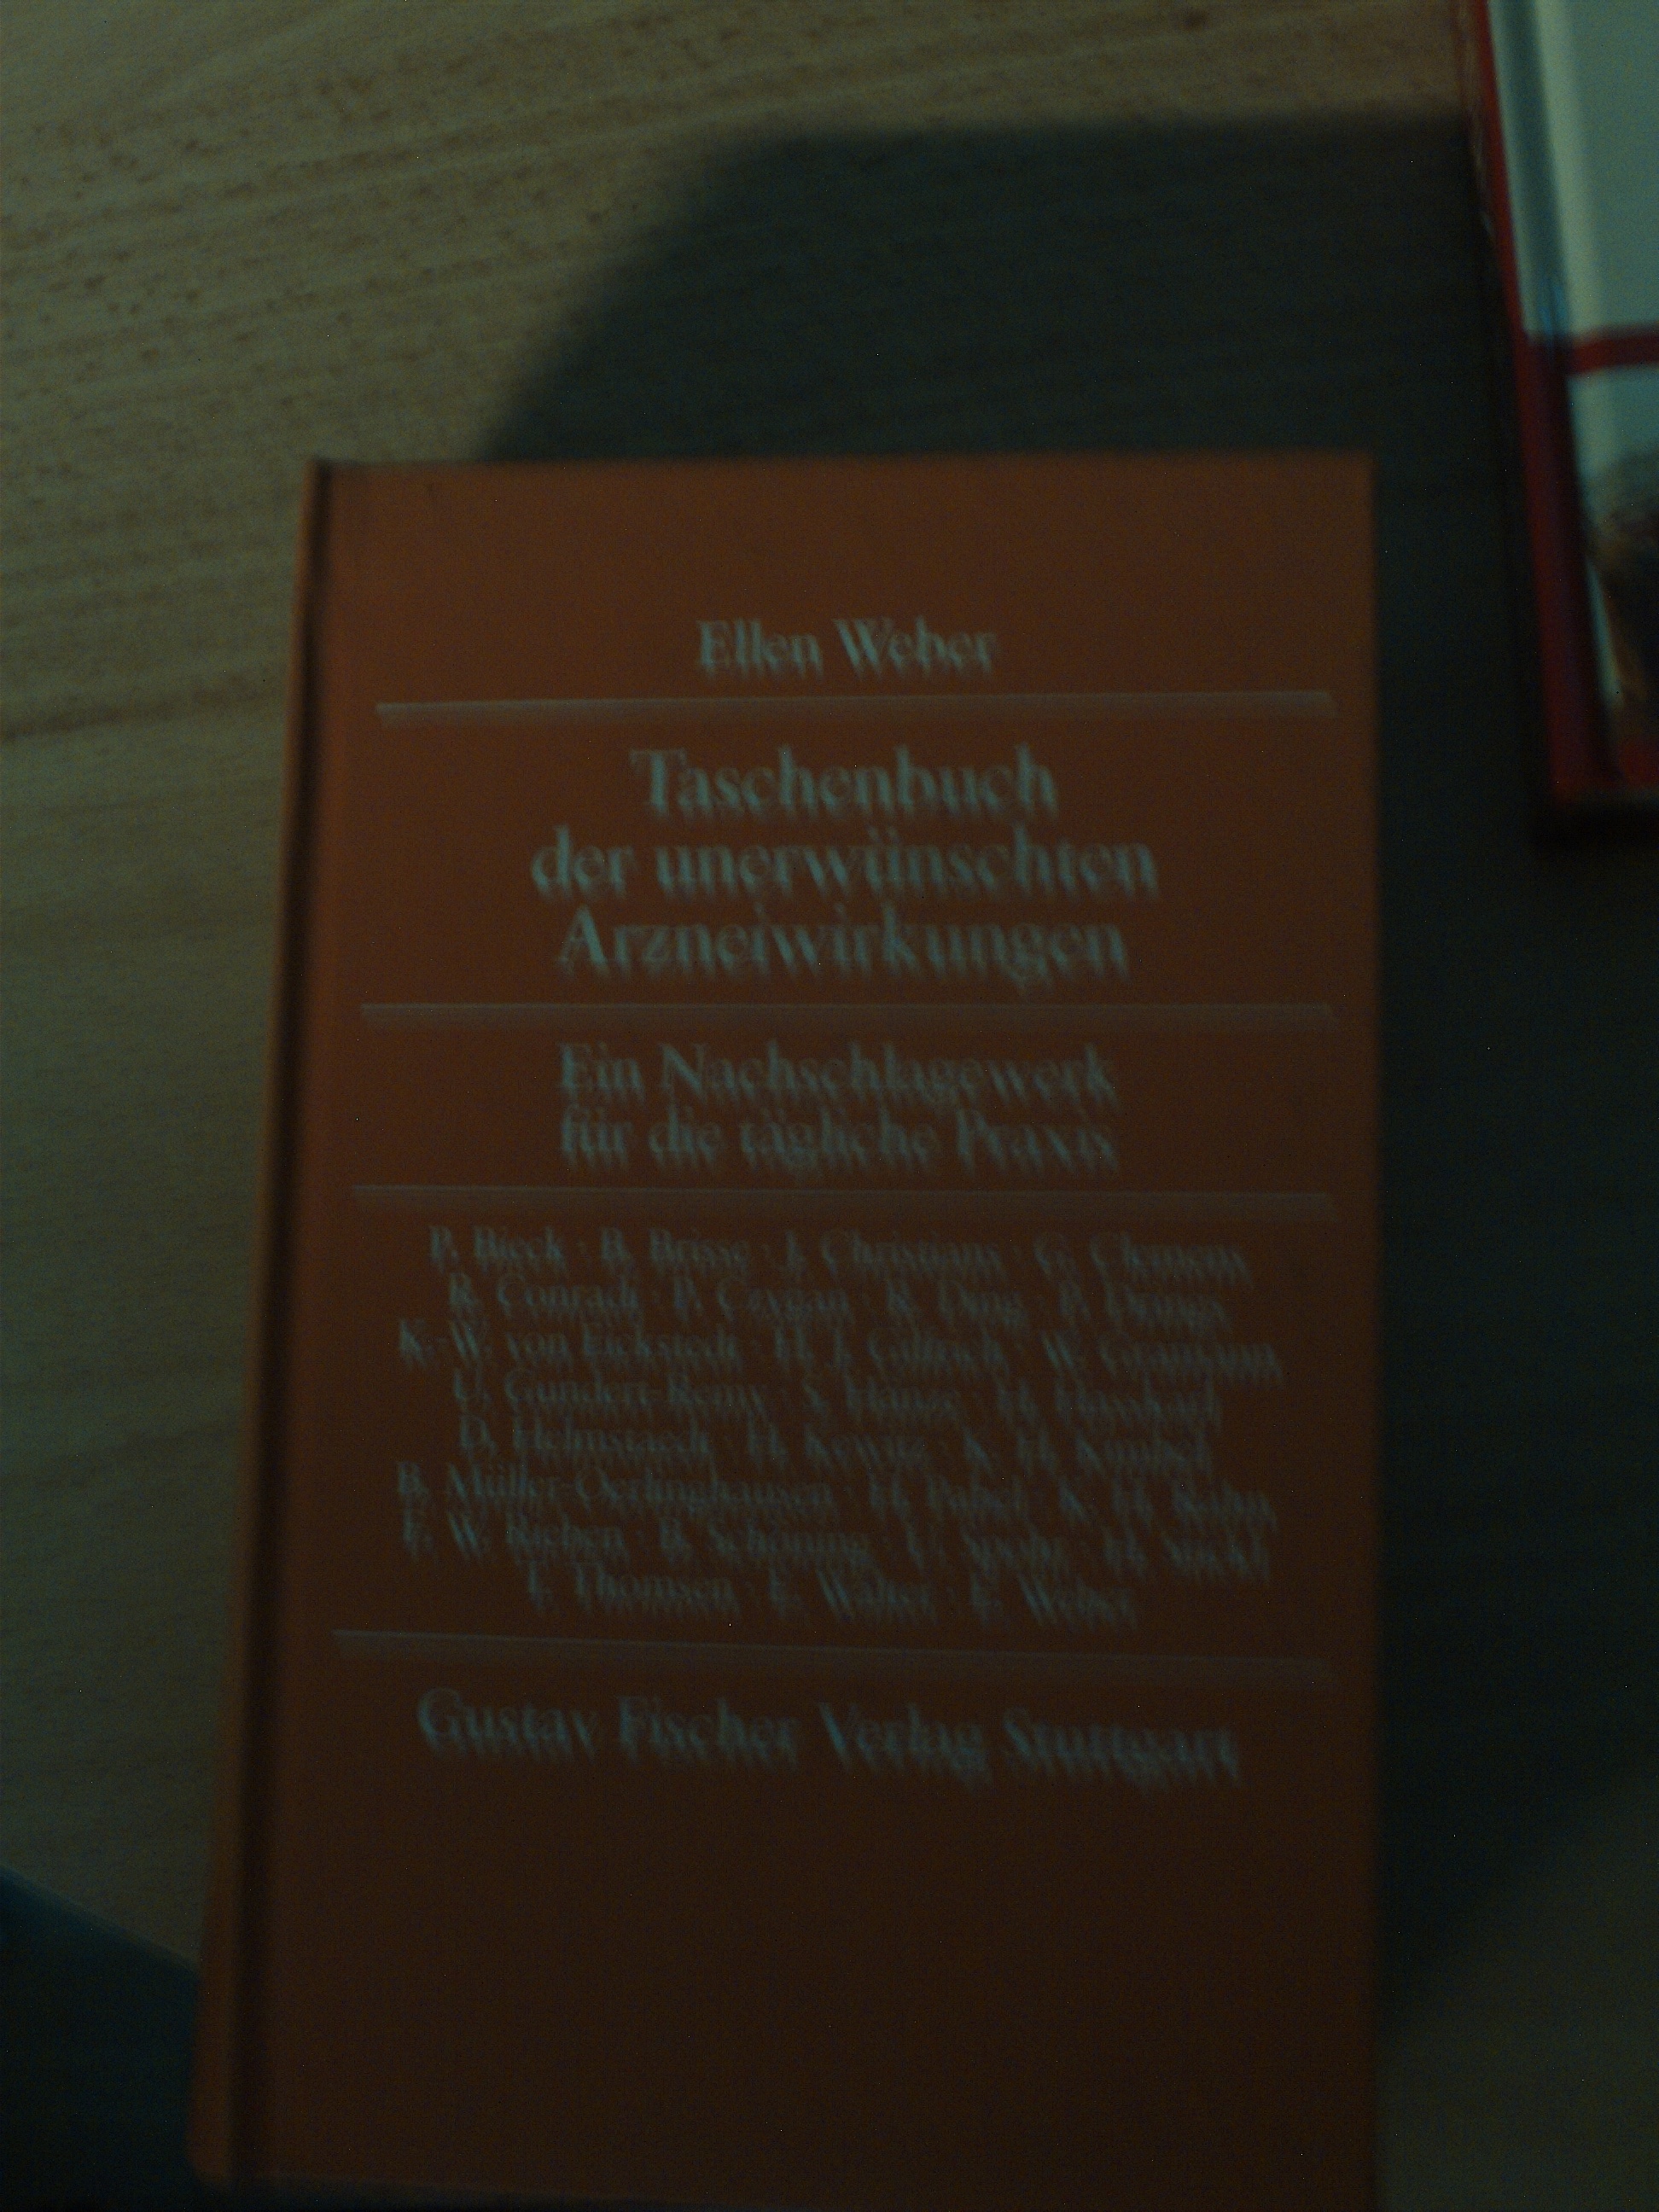 Taschenbuch der unerwuenschten Arzneiwirkungen  Ein Nachschlagewerk fuer die taegliche PraxisEllen Weber [Hrsg.]